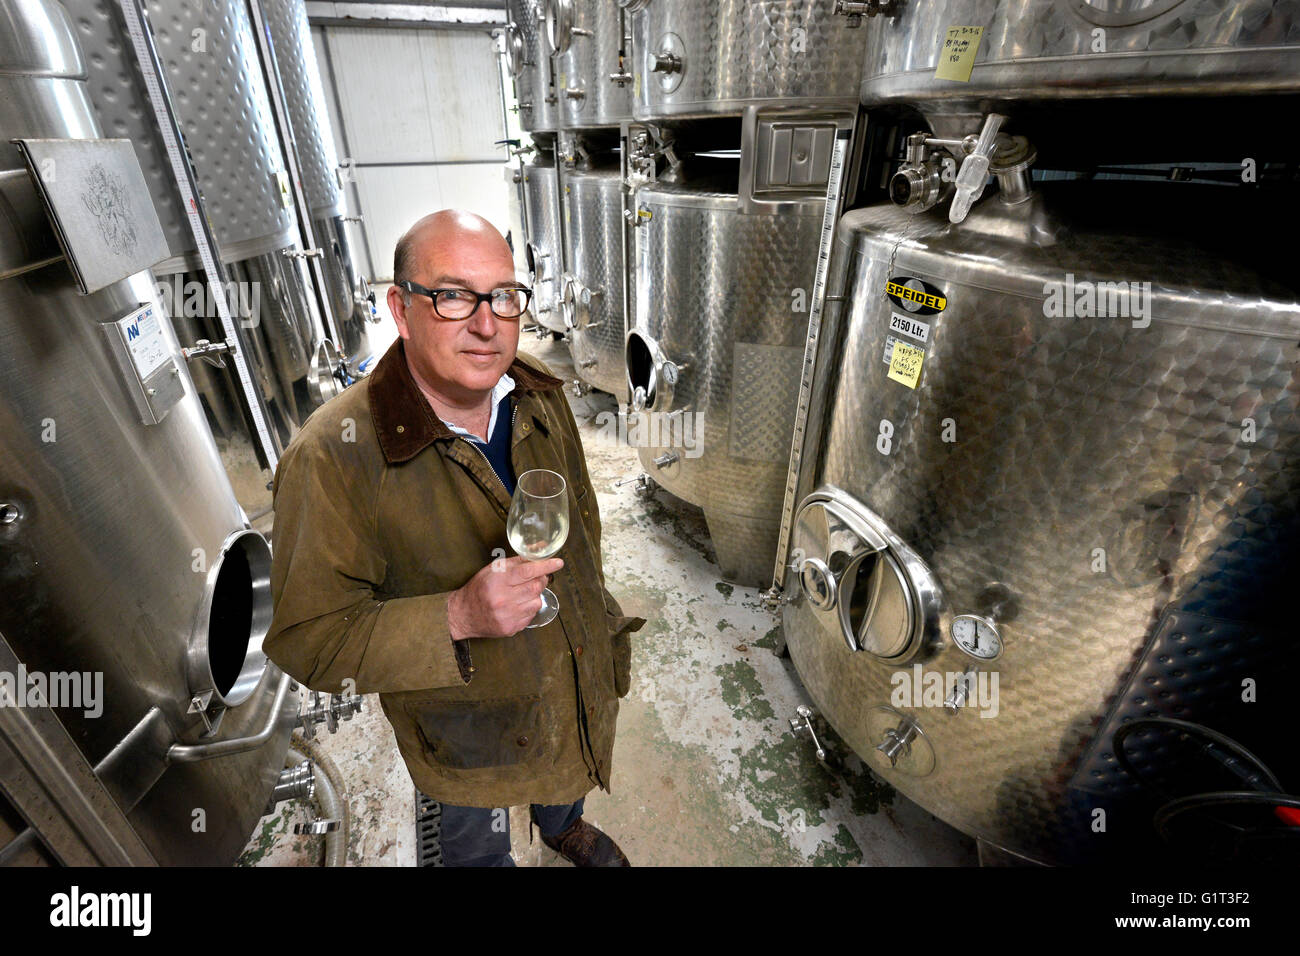 Owen Elias, head winemaker at Kingscote Vineyard, East Grinstead, UK Stock Photo